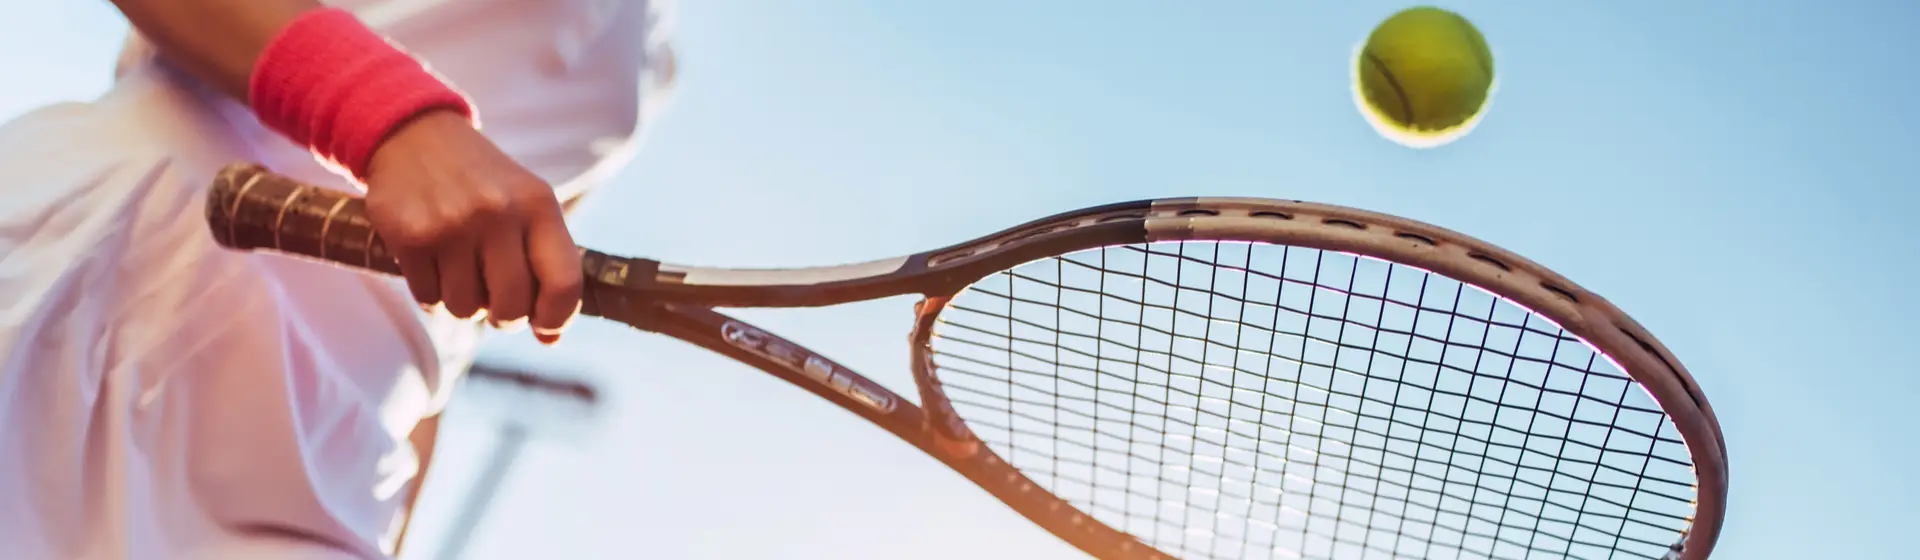 Melhor raquete de tênis em 2022: 6 opções para arrasar nas quadras